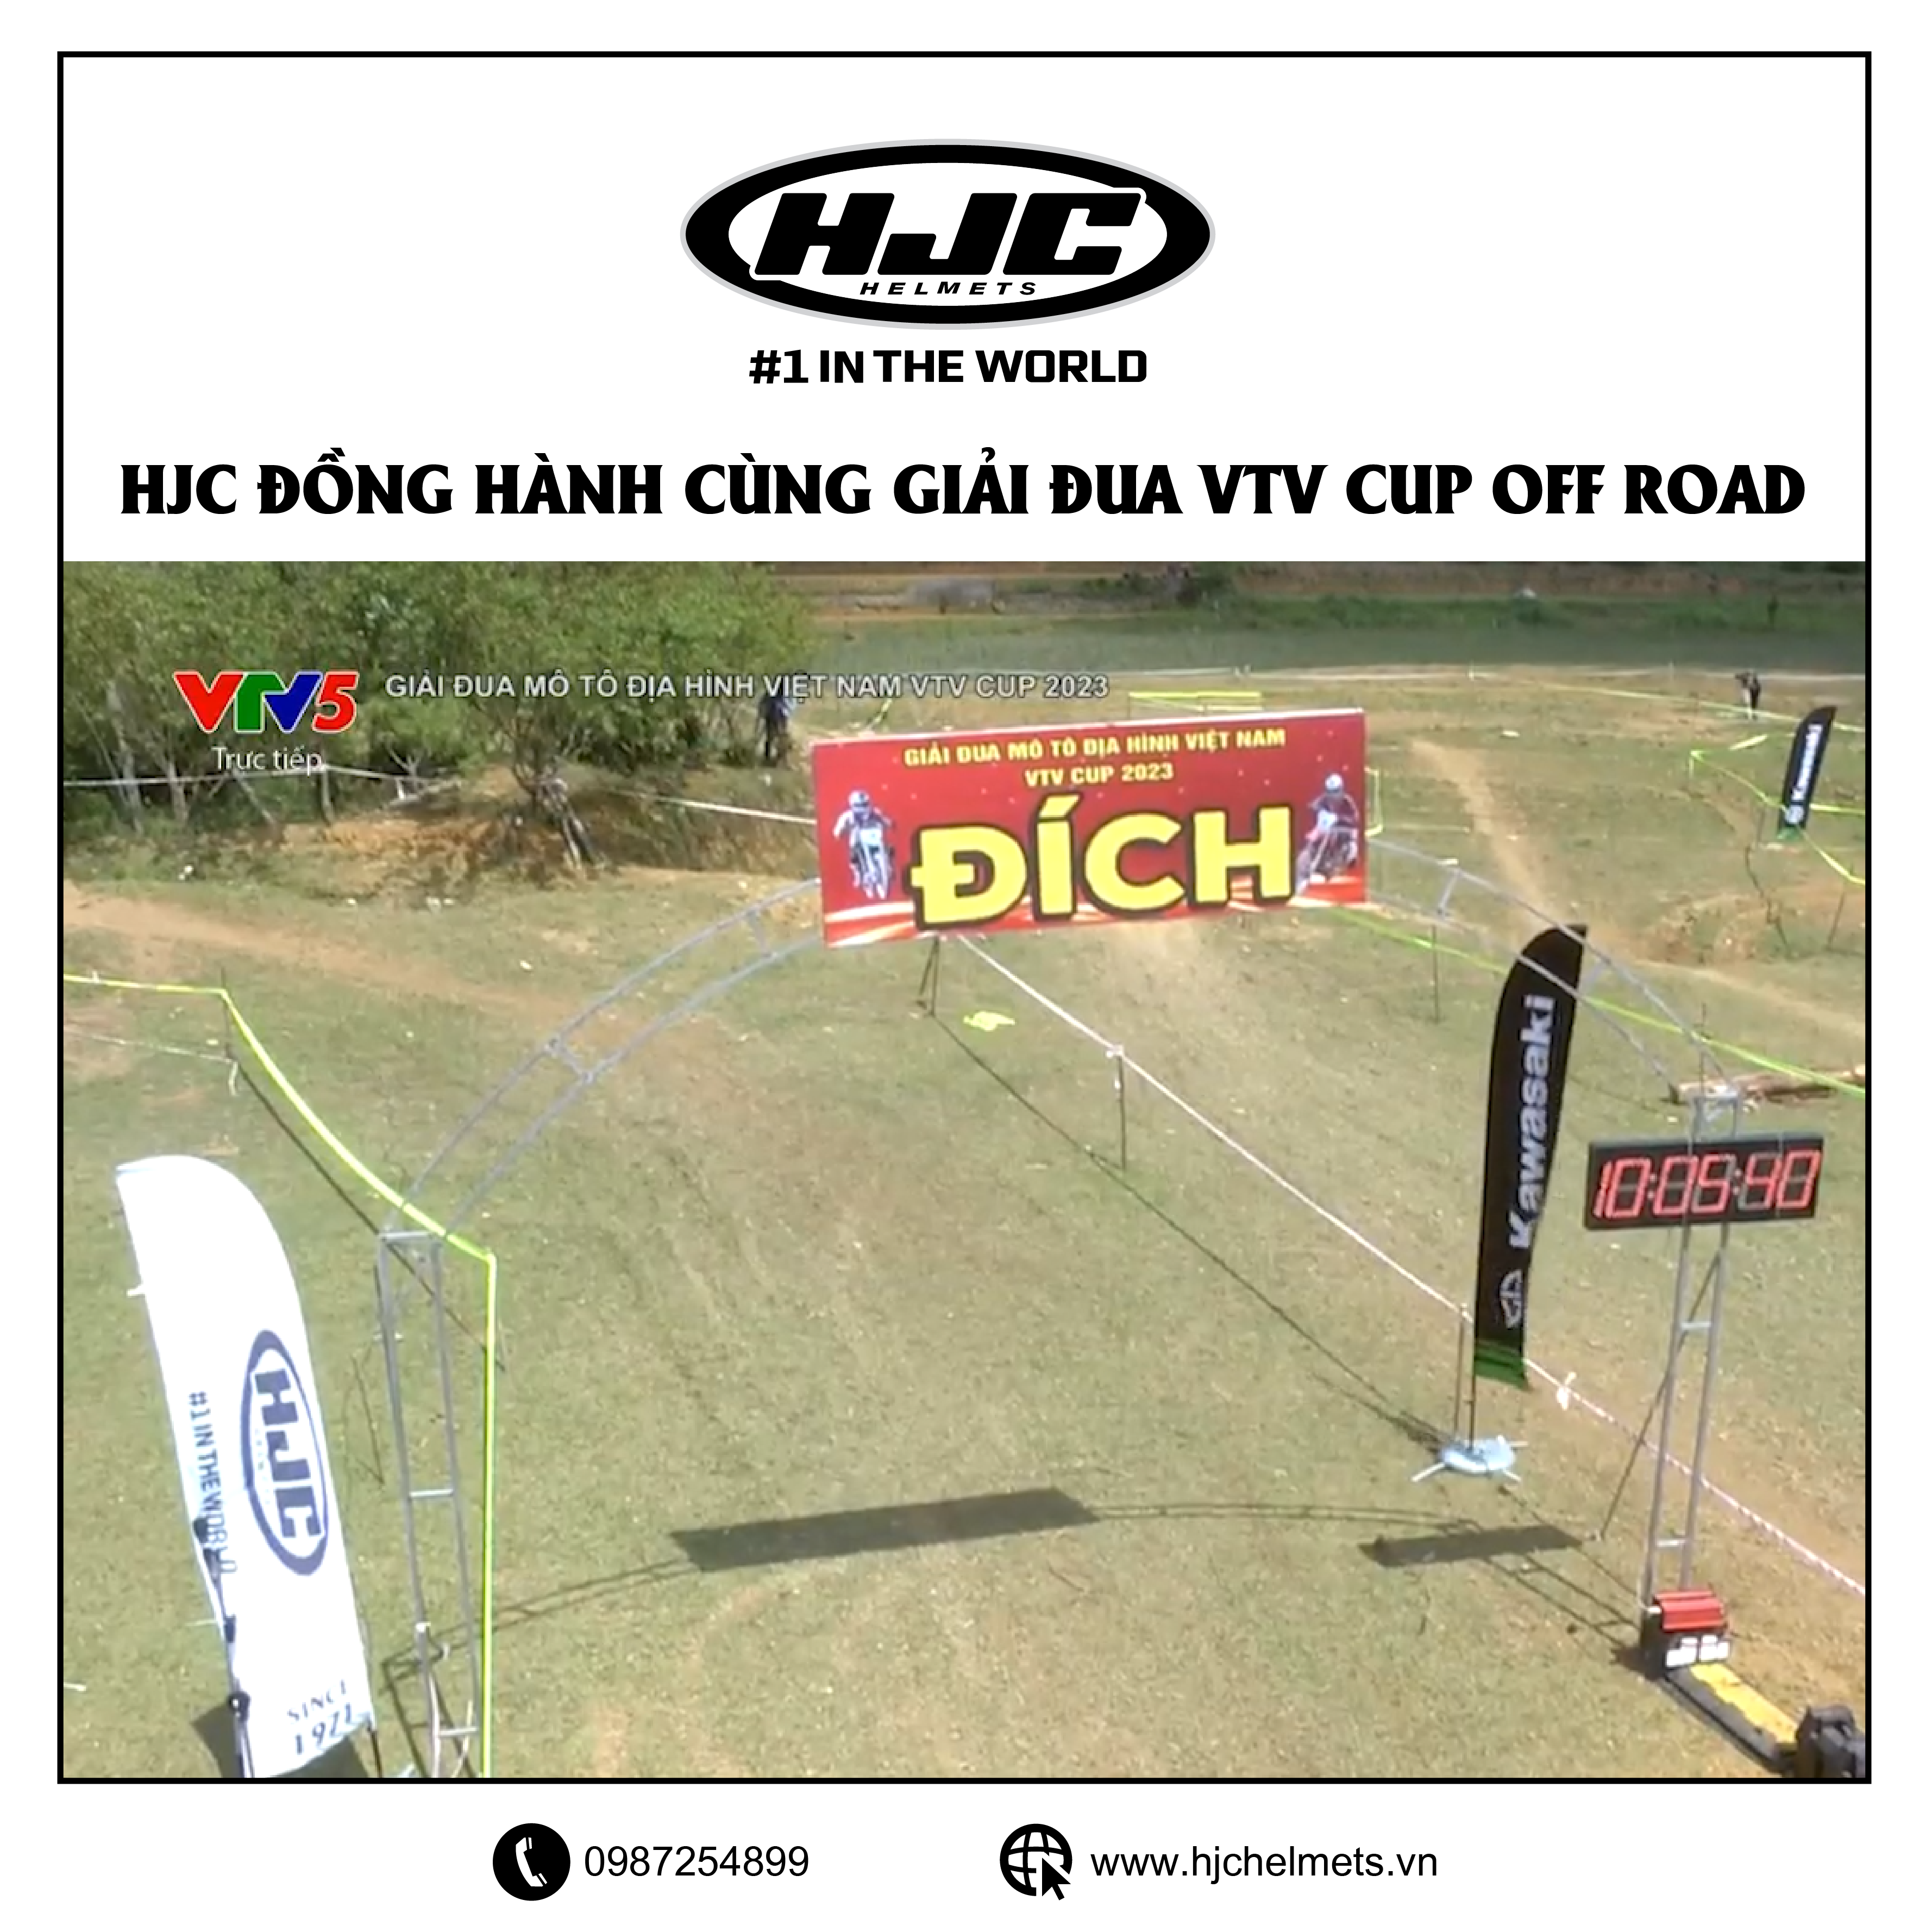 HJC đồng hành cùng giải đua VTV cup off road